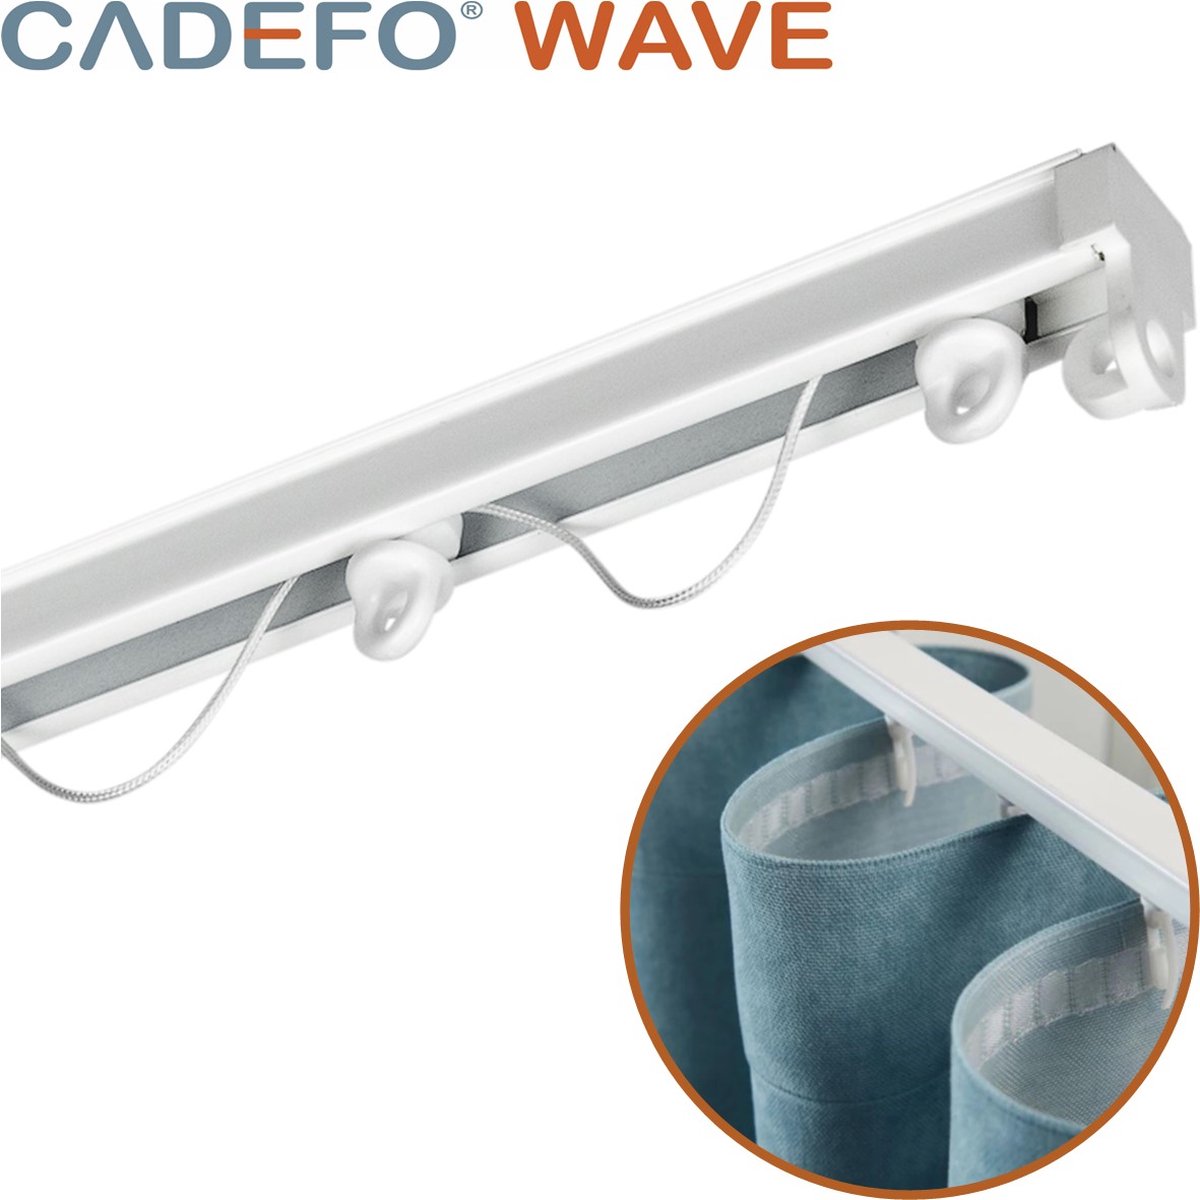 CADEFO WAVE (551 - 600 cm) Gordijnrails - Compleet op maat! - UIT 1 STUK - Leverbaar tot 6 meter - Plafondbevestiging - Lengte 581 cm